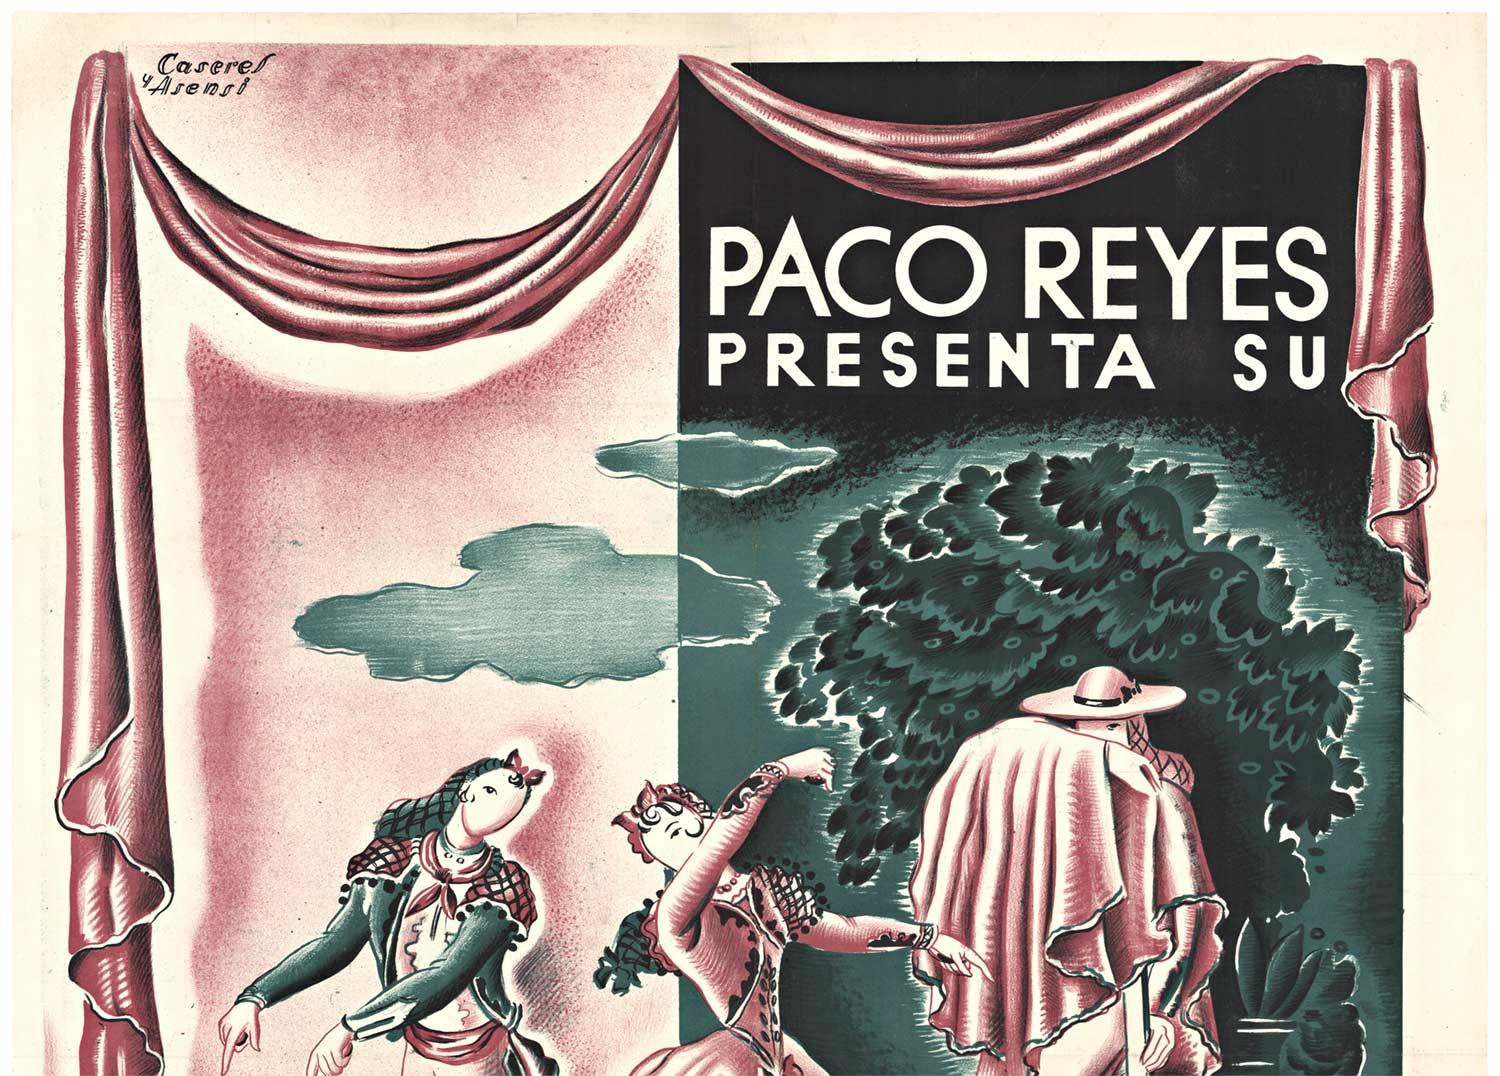 Original Paco Reyes Presenta Su Ballet Teatro con y Gloria Libran, Vintage-Poster – Print von Rafael Caseres